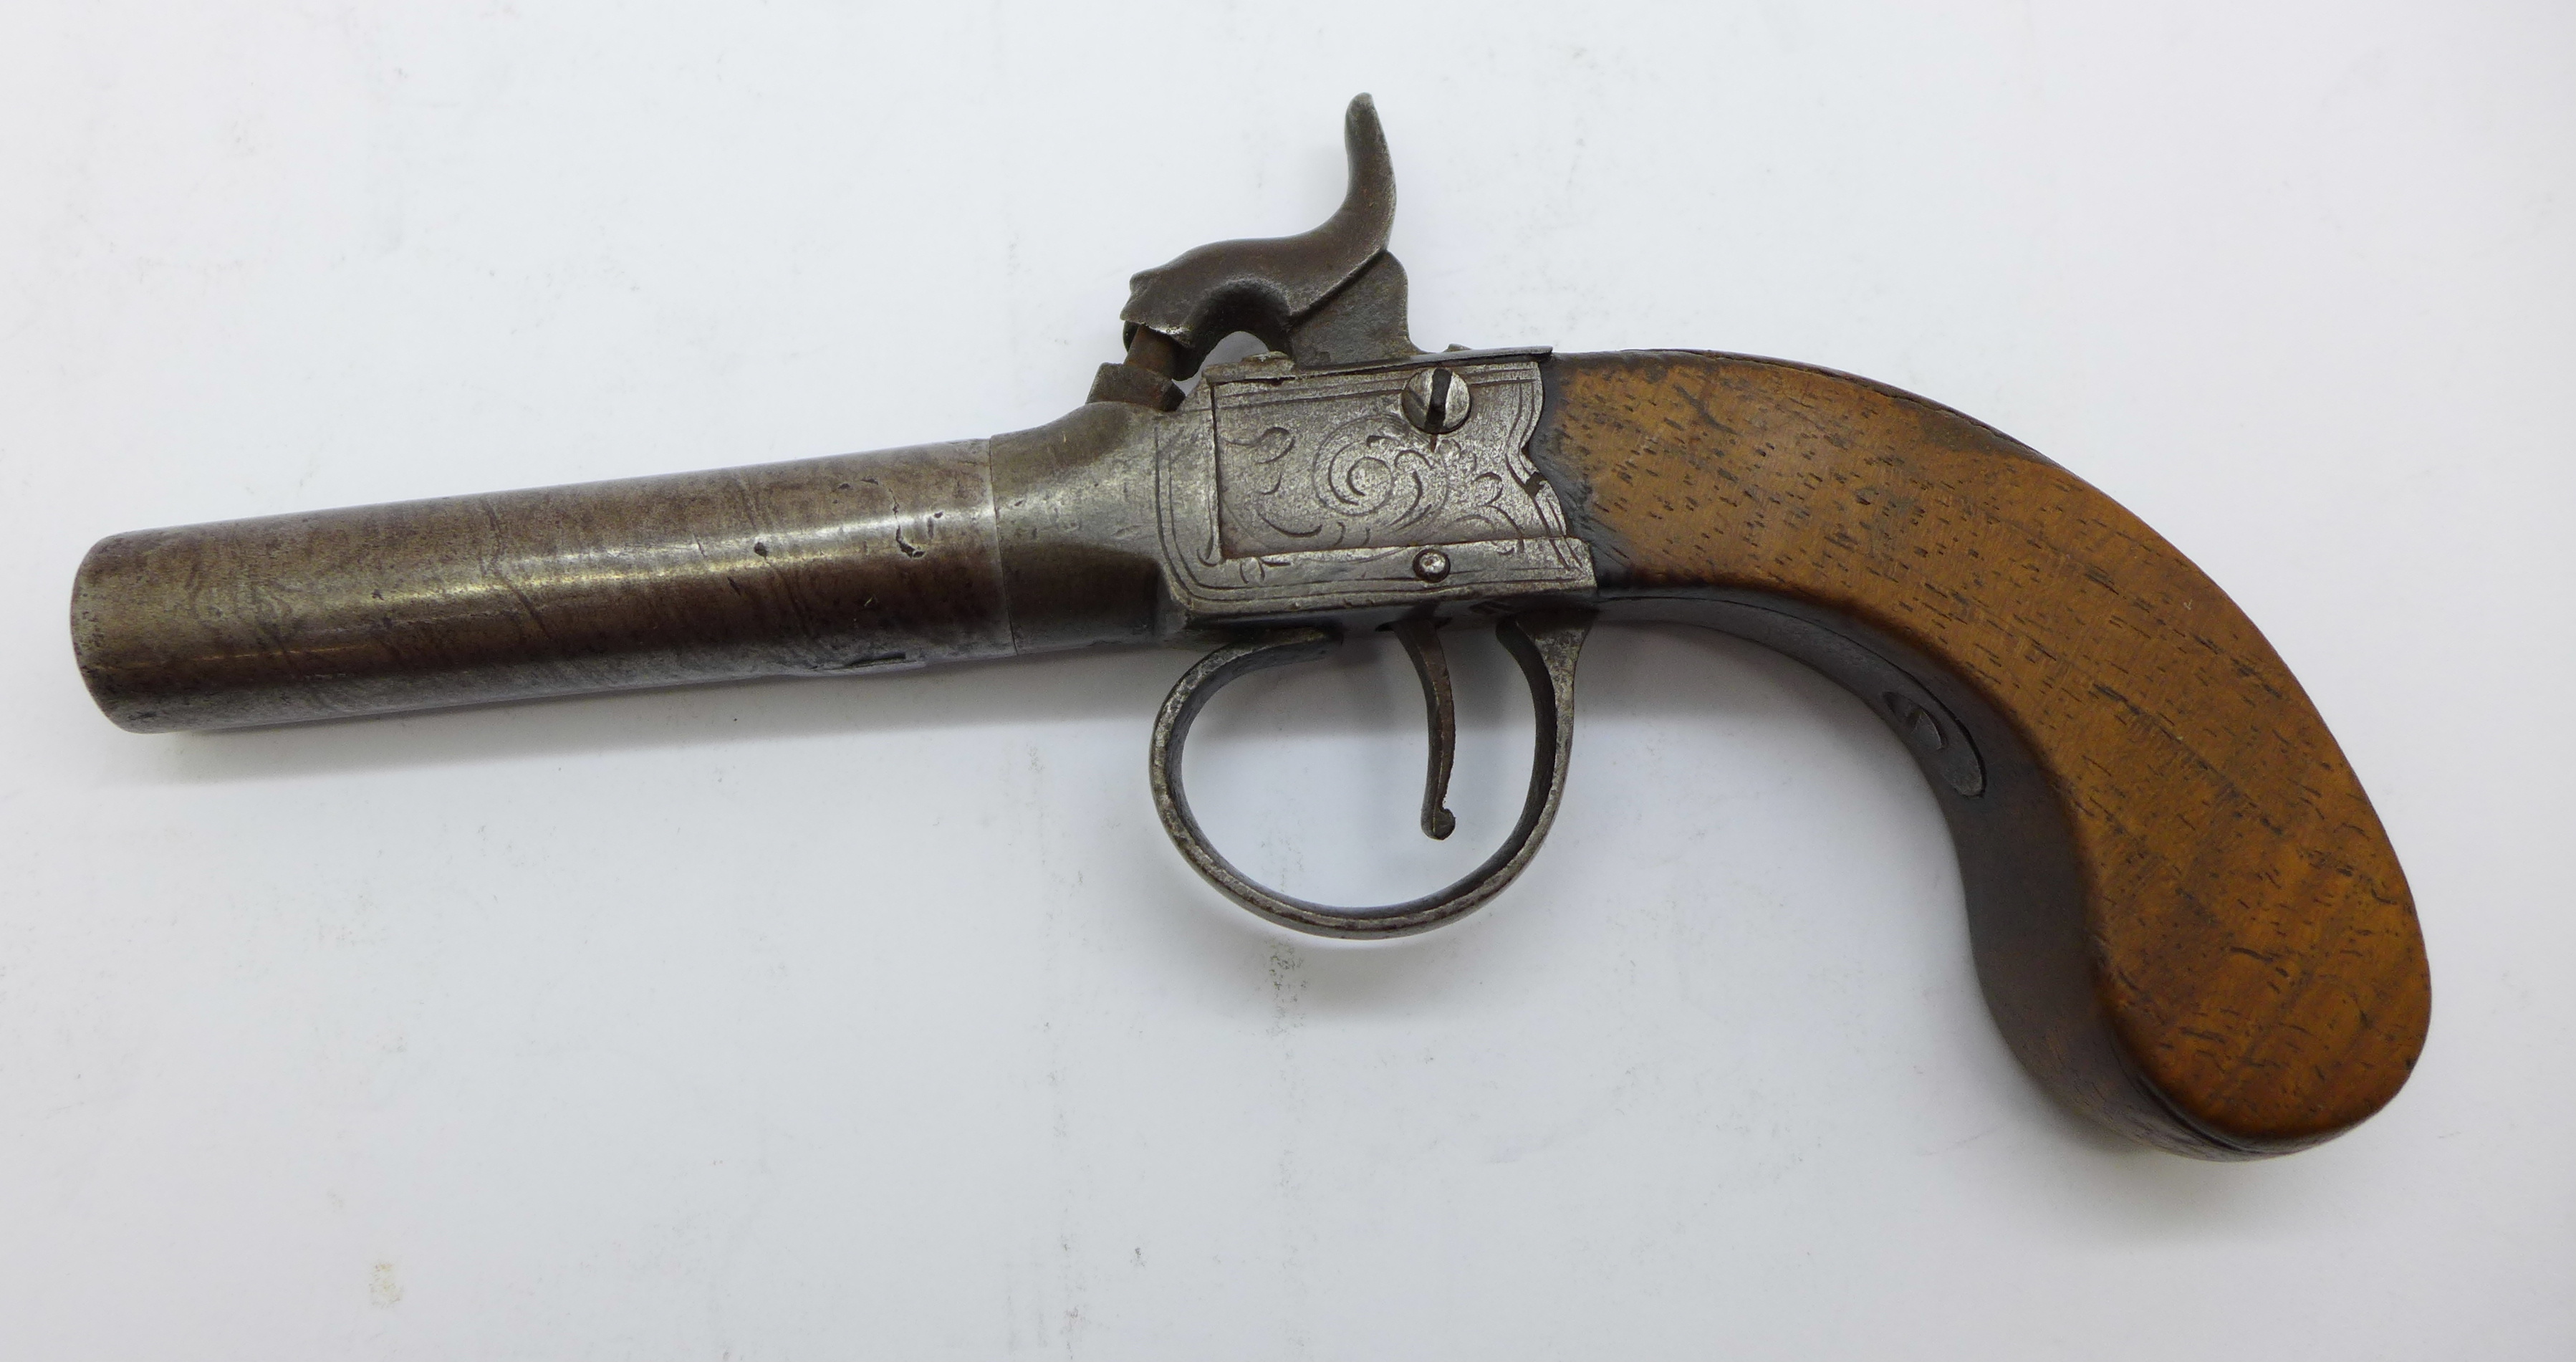 A 19th Century percussion pistol